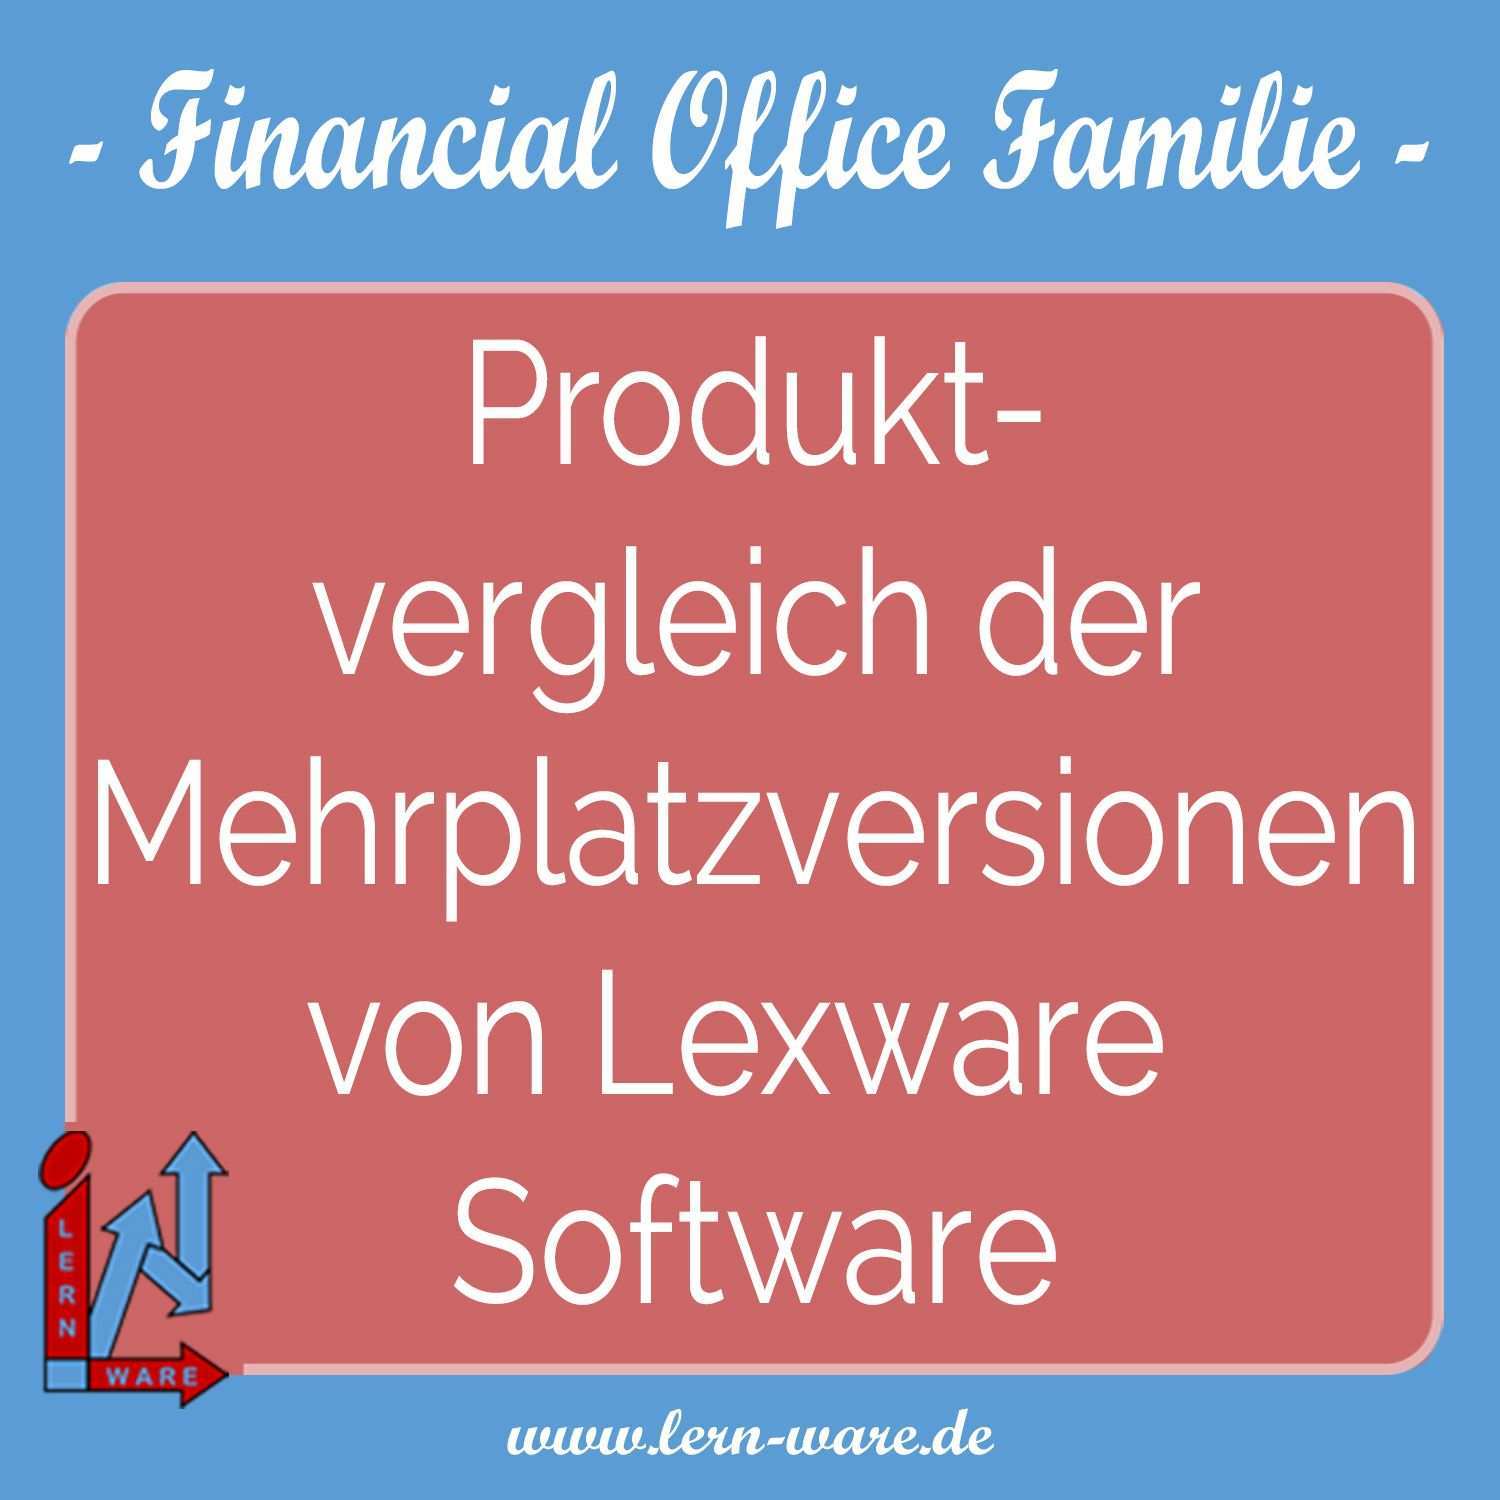 Lexware Software Financial Office Premium Pro Plus Basis 2019 2020 Preisvergleich Untereinander Produktvergleich Miteinander Software Buchhaltung Lernen